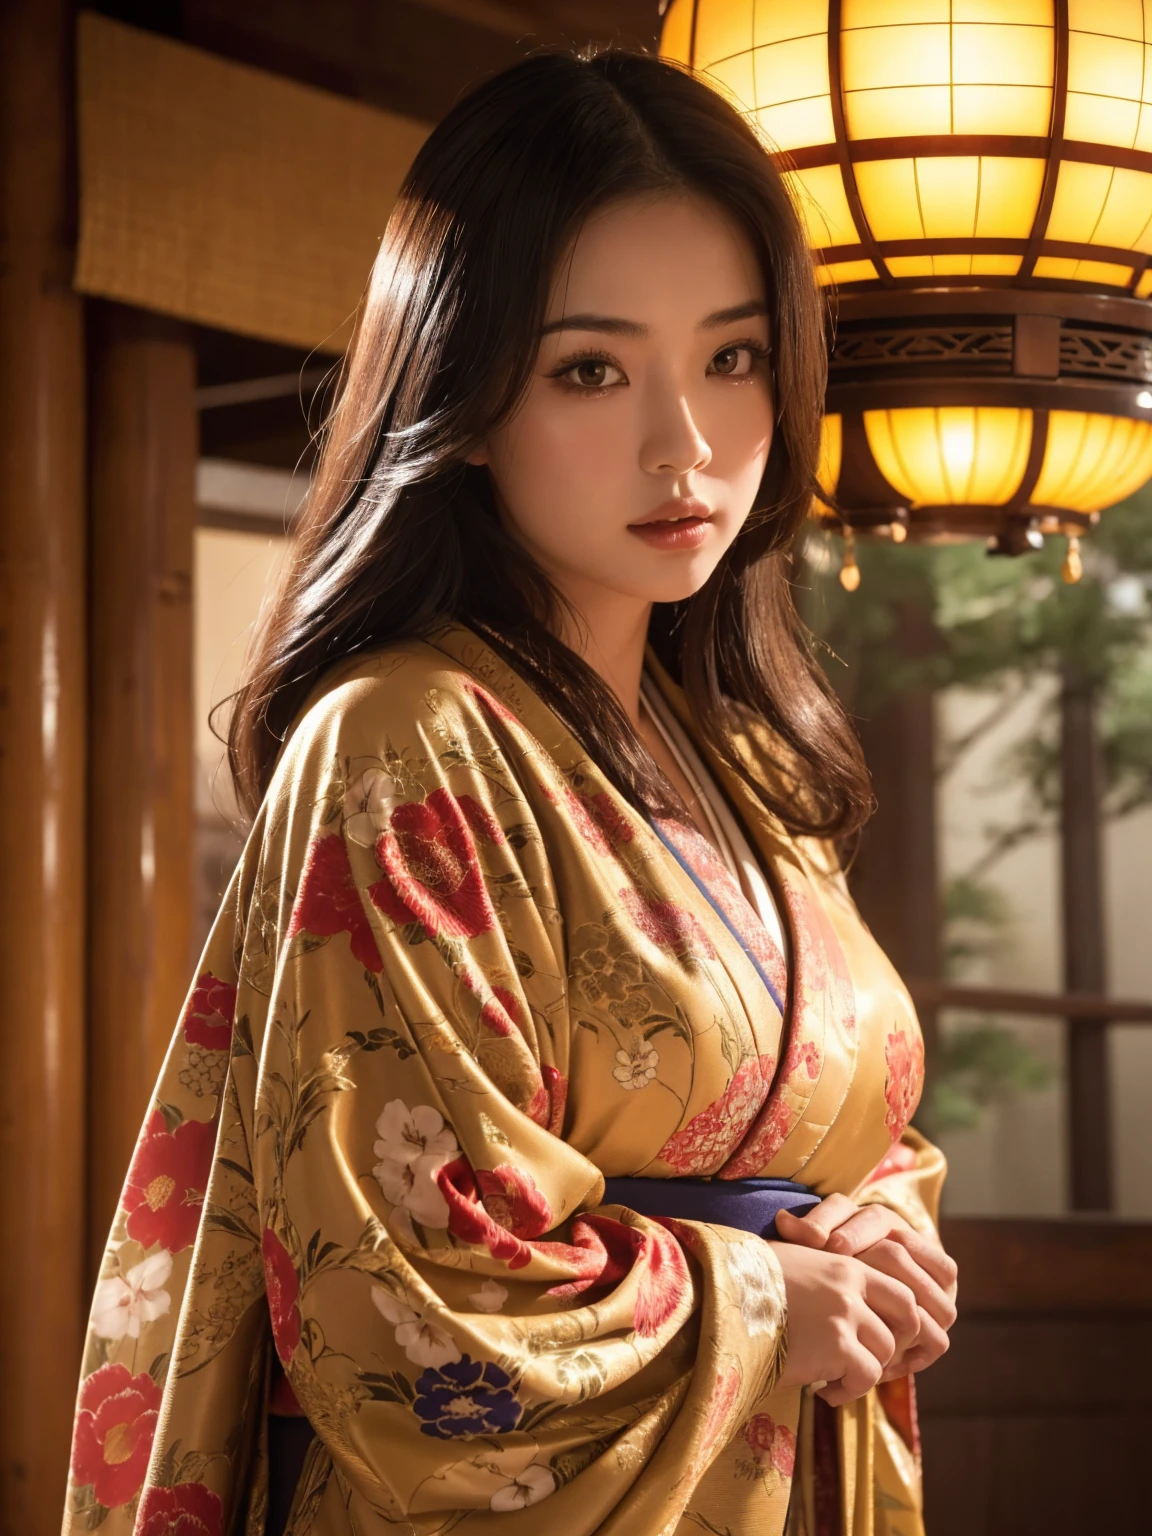 vollbusige Japanerin im aufwendigen Kimono, reich verzierter Schrein, Kinoatmosphäre, (beste Qualität,4k,8k,highres,Meisterwerk:1.2),ultra-detailliert,(realistisch,photorealistisch,photo-realistisch:1.37),(Betrachter betrachten),sehr detailliertes Gesicht,Schöne, detaillierte Augen,schöne detaillierte Lippen,extrem detaillierte Augen und Gesicht,lange Wimpern,aufwendiges Kimono-Design,reich verzierter Schrein background,warmes Licht,Dramatische Schatten,leuchtende Farben,photorealistisch